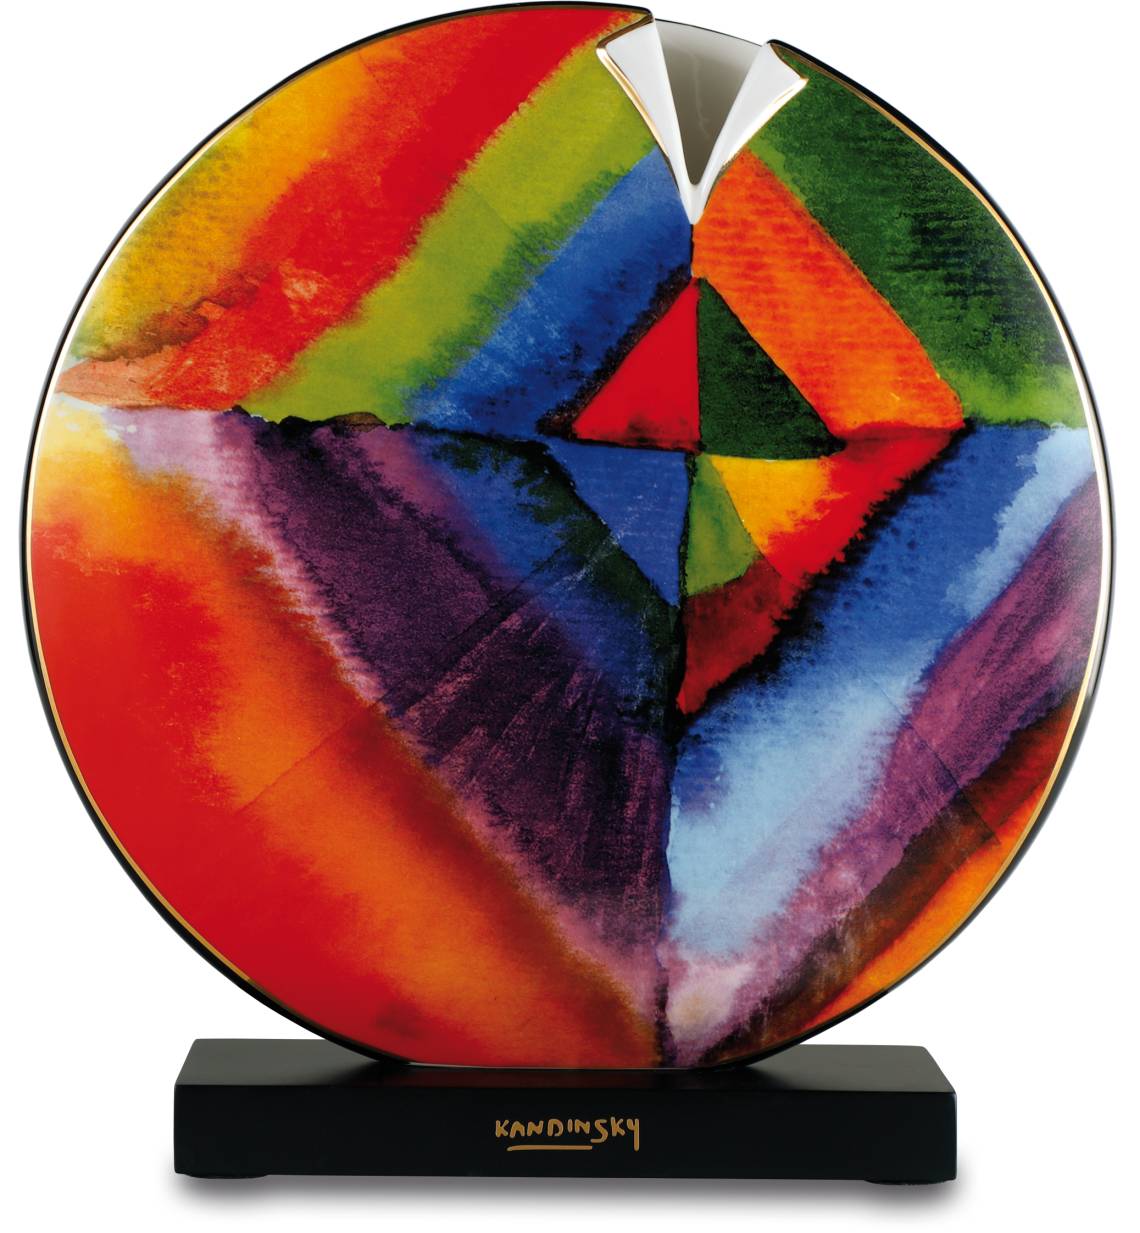 Vase mit Kandinskys Farbstudie von Artis Orbis